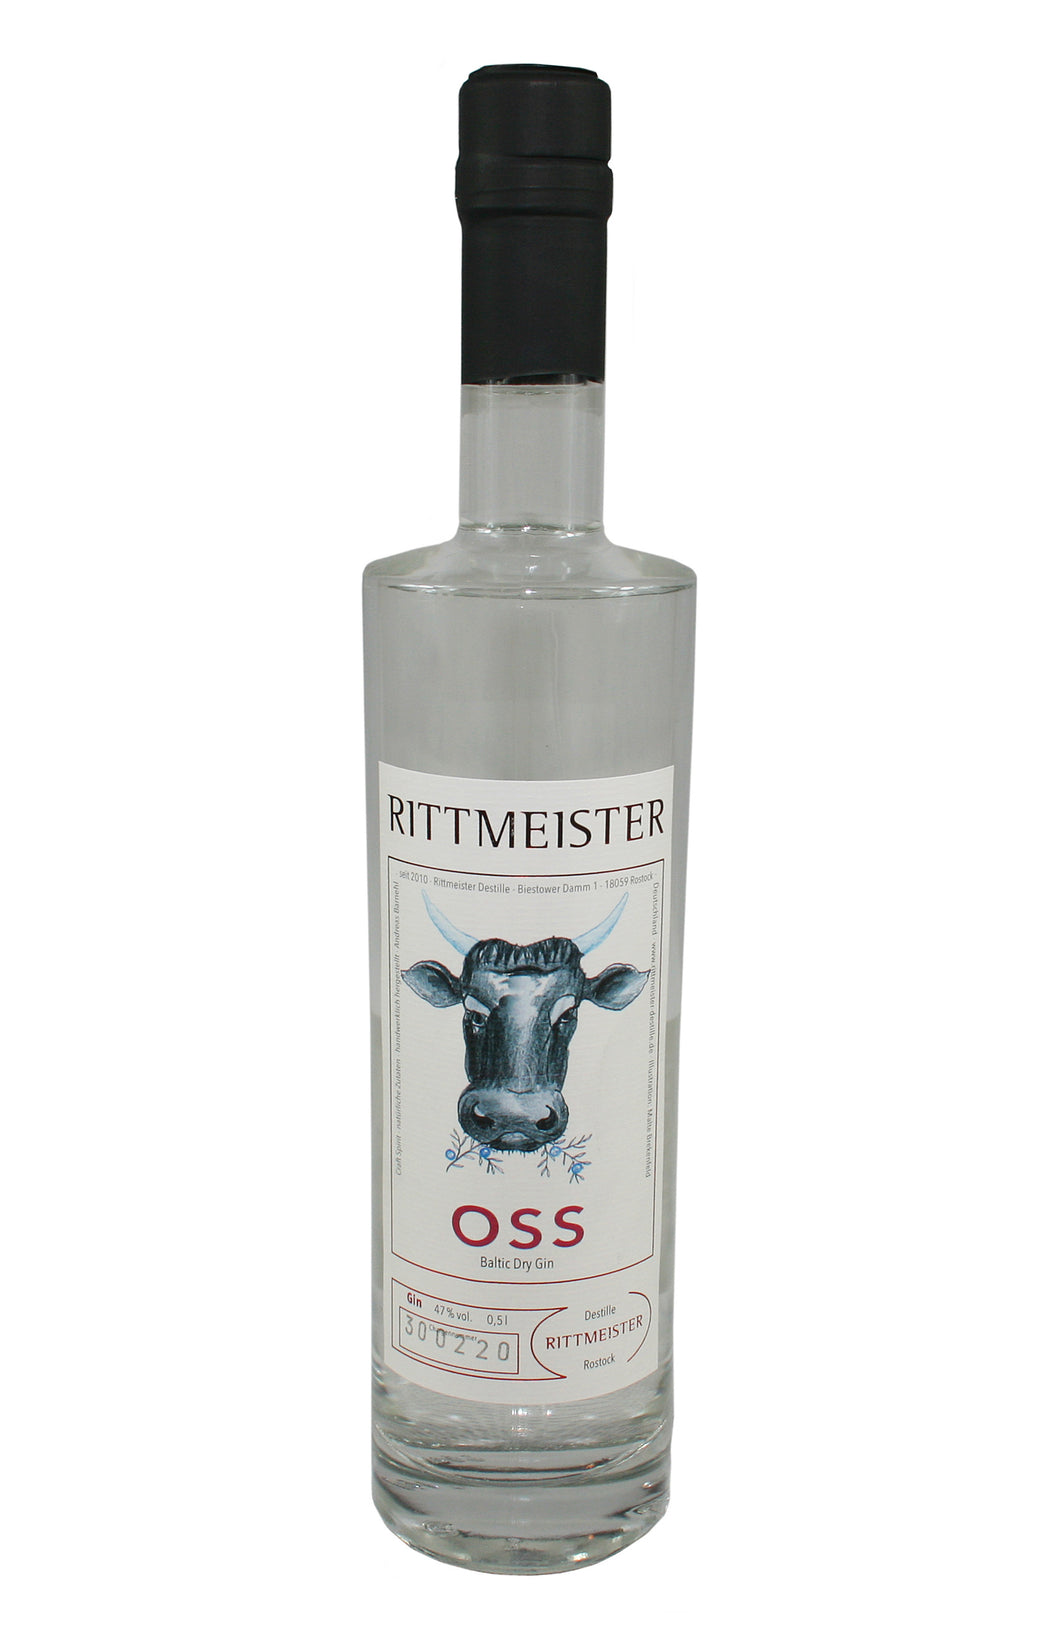 Rittmeister - OSS Baltic Dry Gin (47% Vol.) / Gin